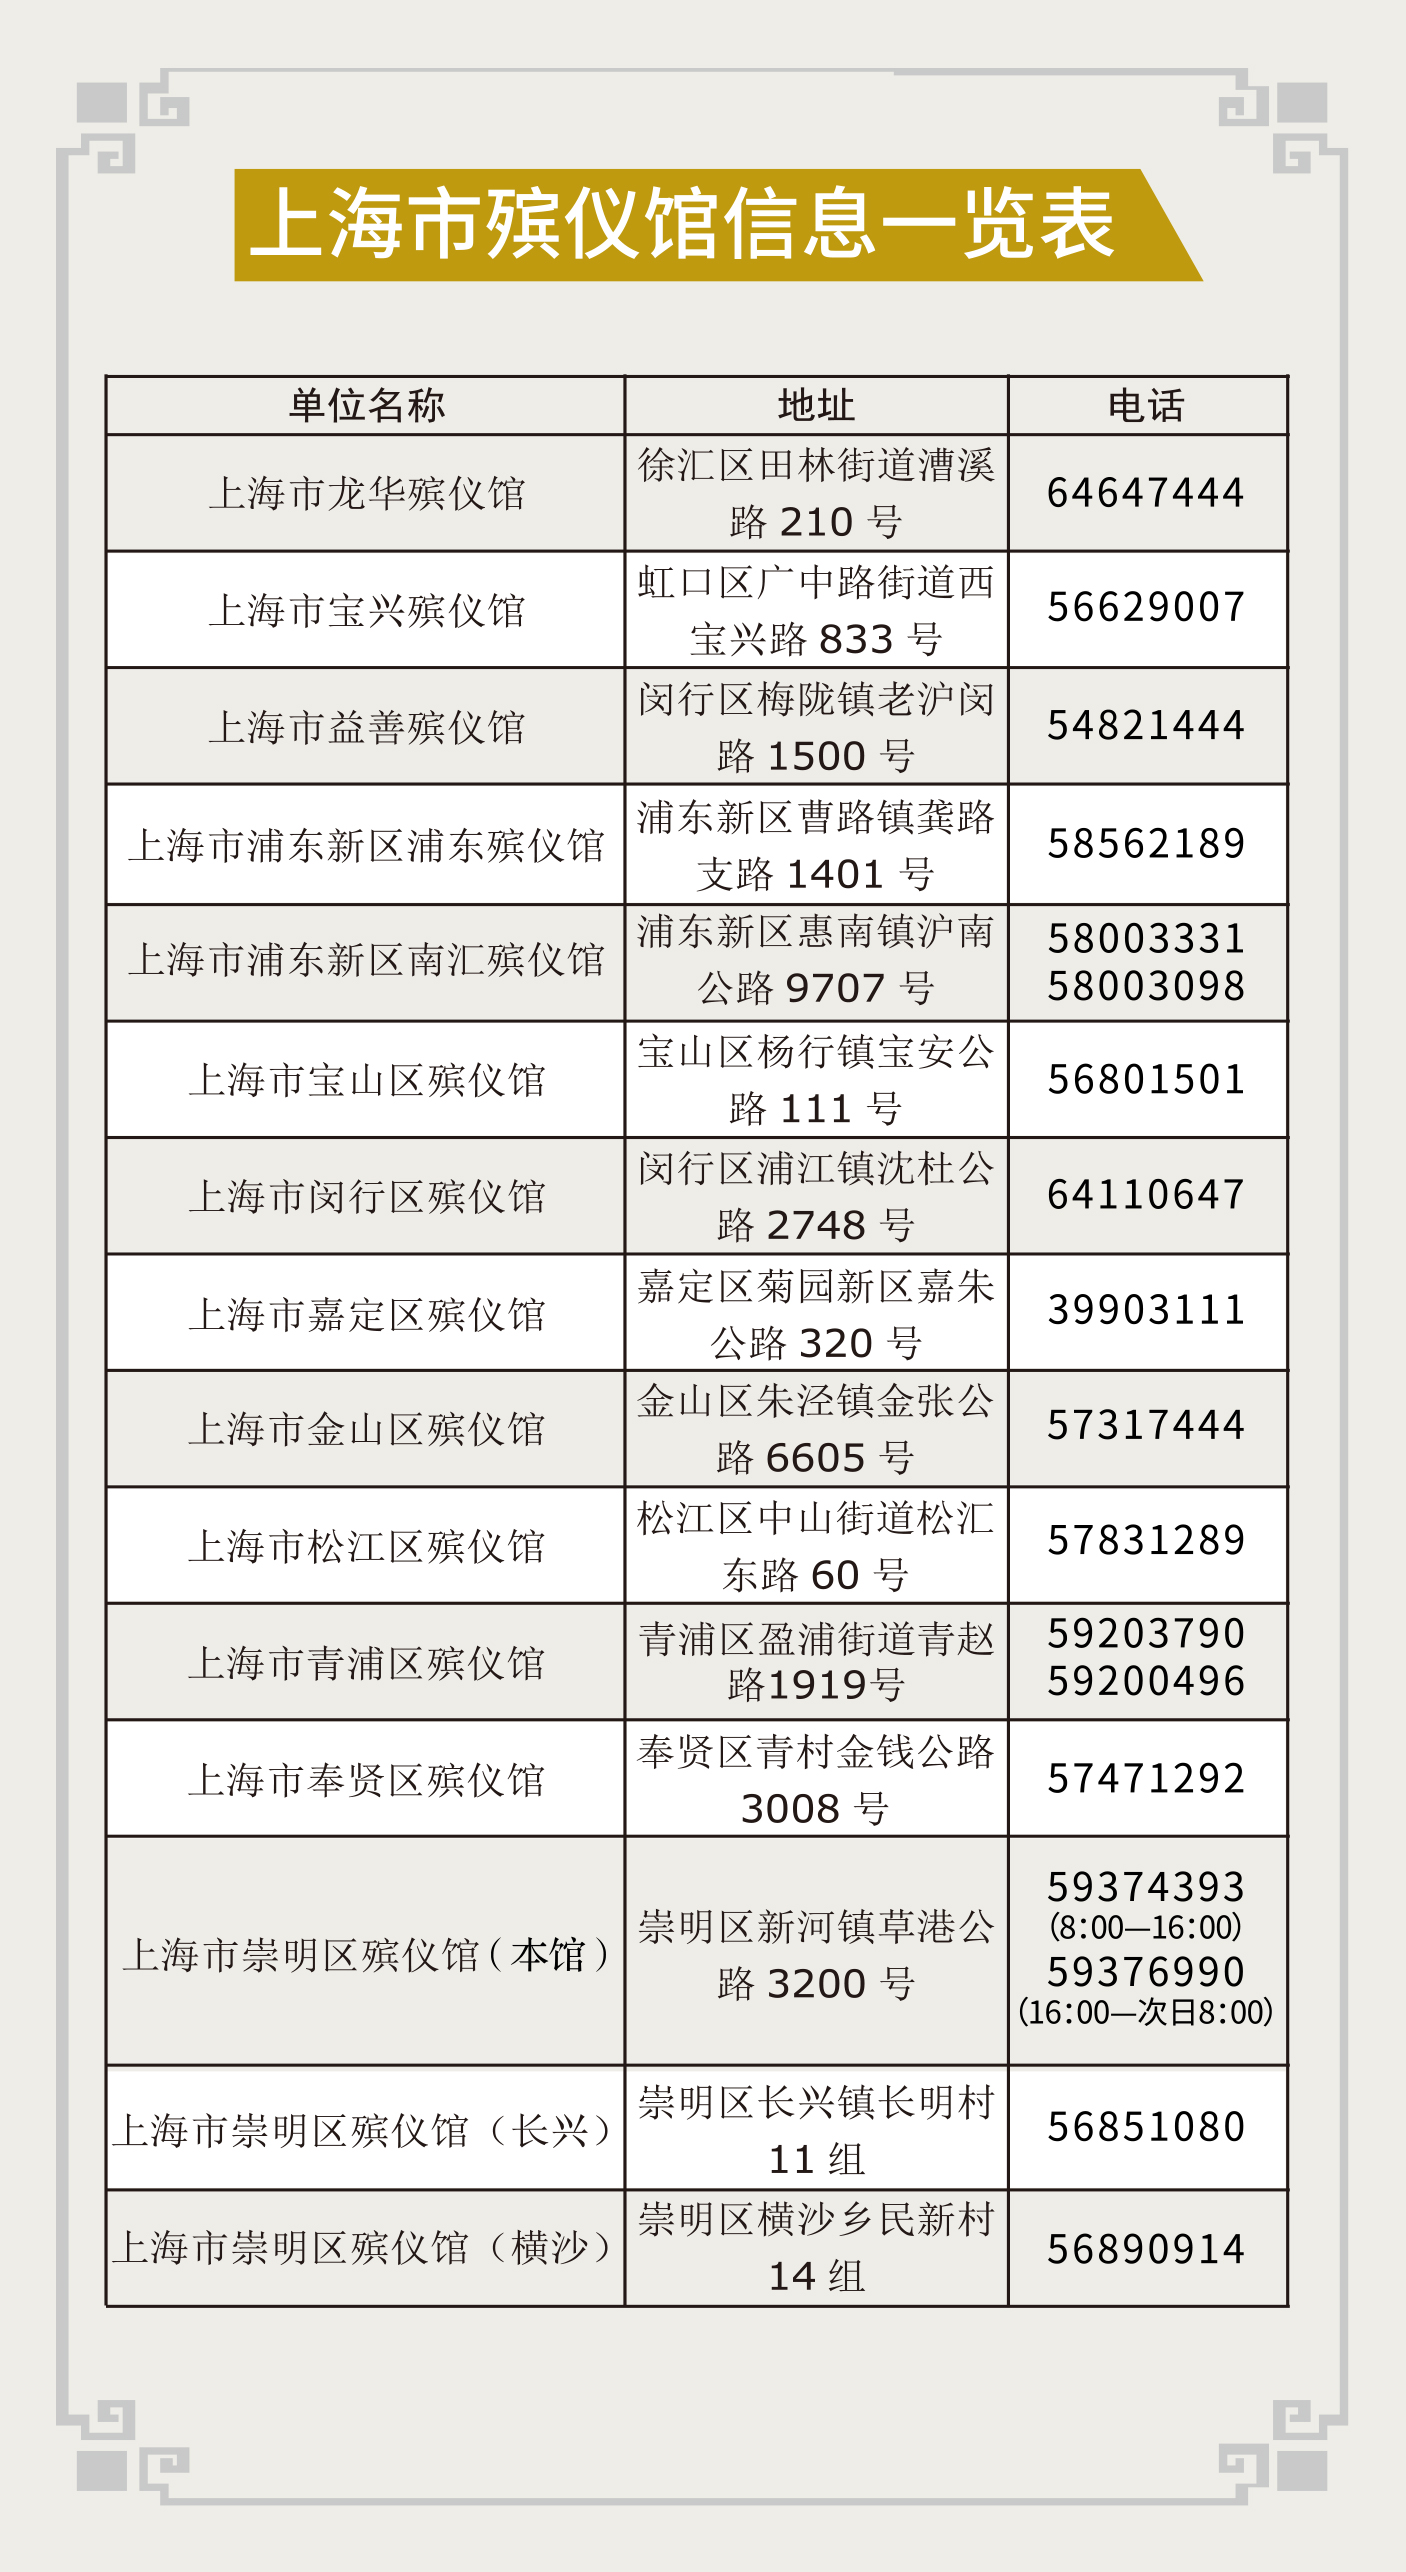 上海市殡仪馆信息一览表.jpg